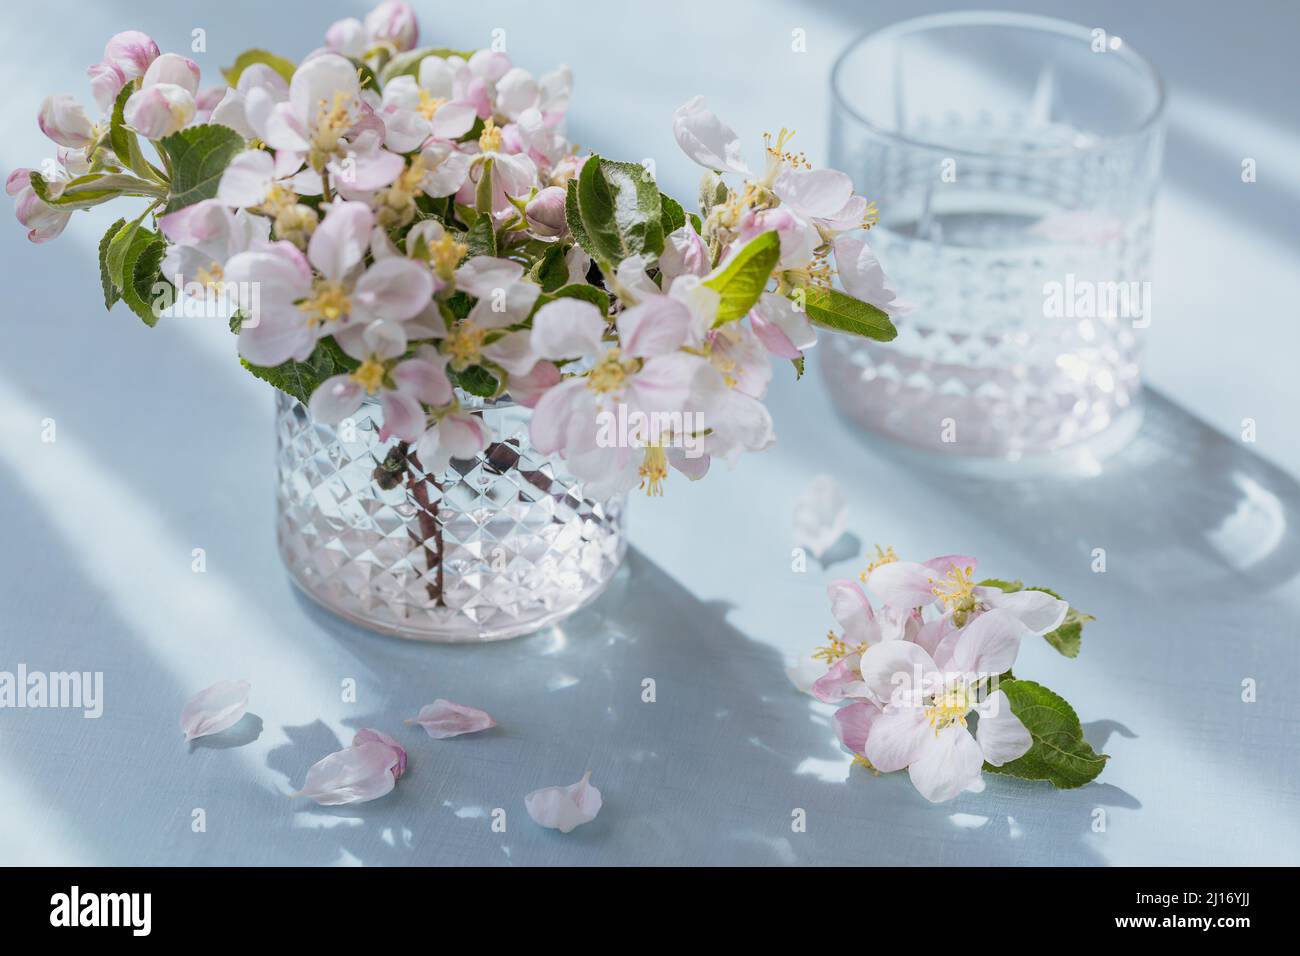 Vaso de agua pura en la mesa con rama de manzano en flor en un vaso. Estado de ánimo de sol por la mañana Foto de stock